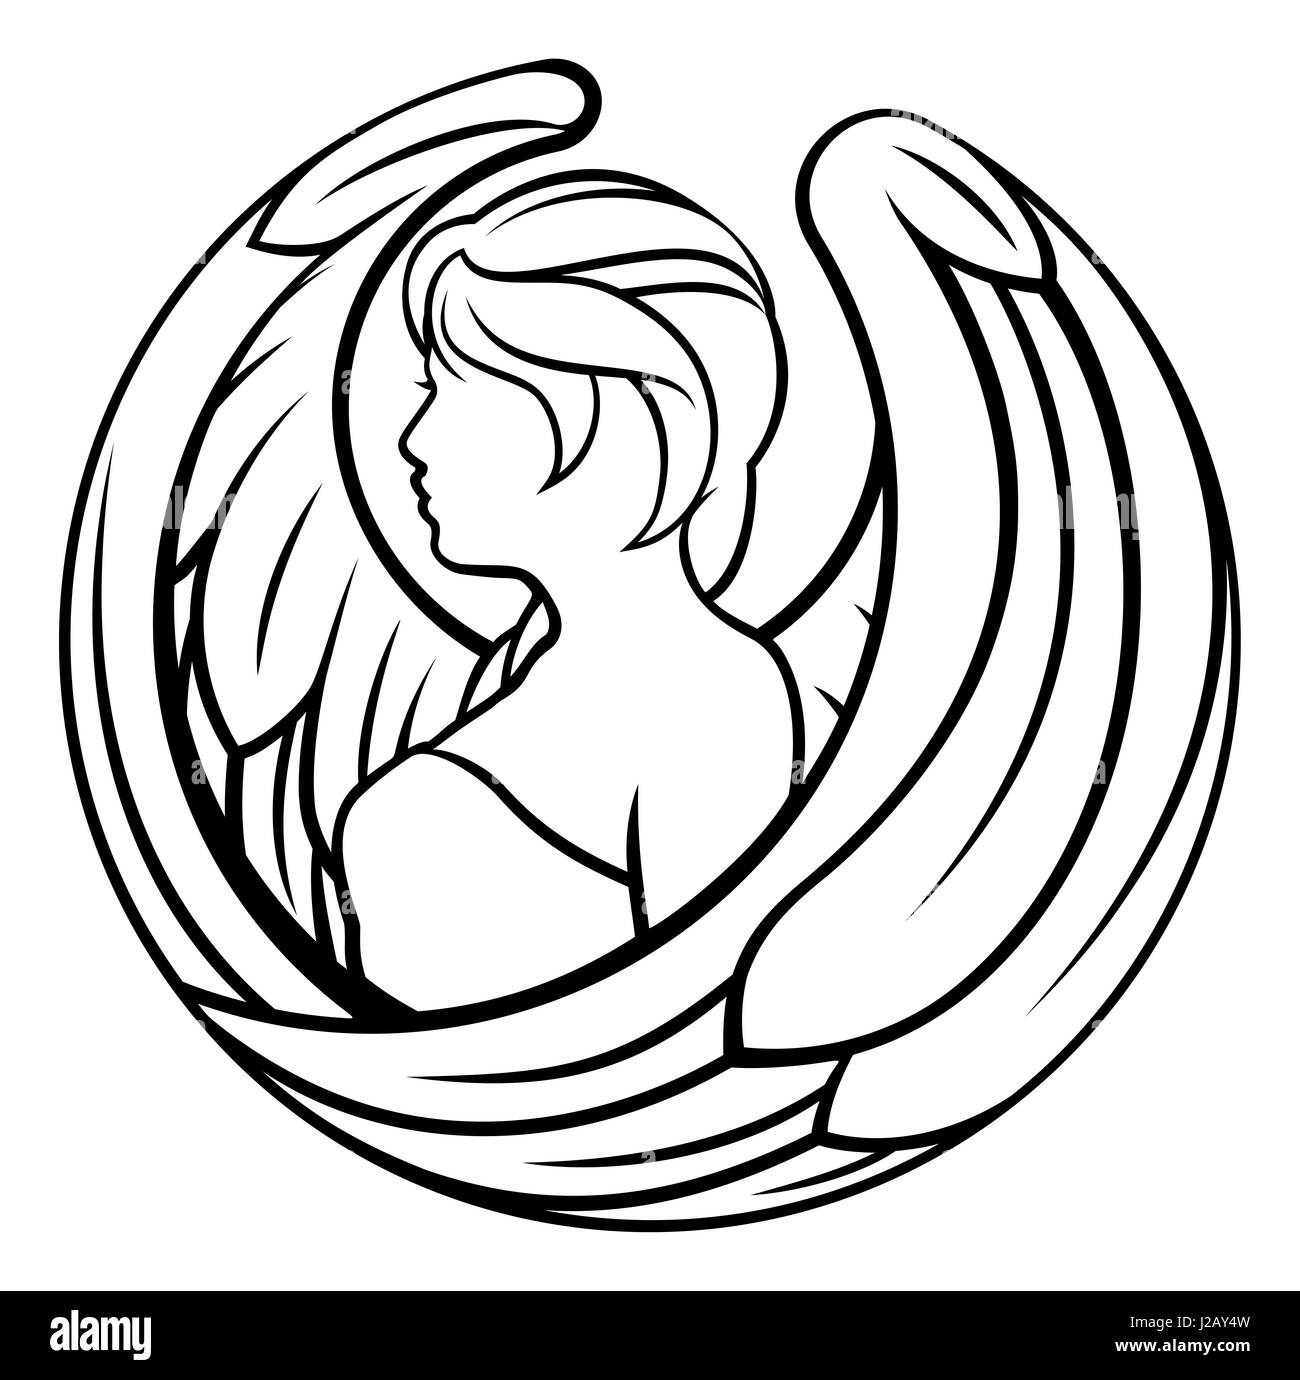 Un ange vierge Astrologie horoscope zodiaque symbole Banque D'Images